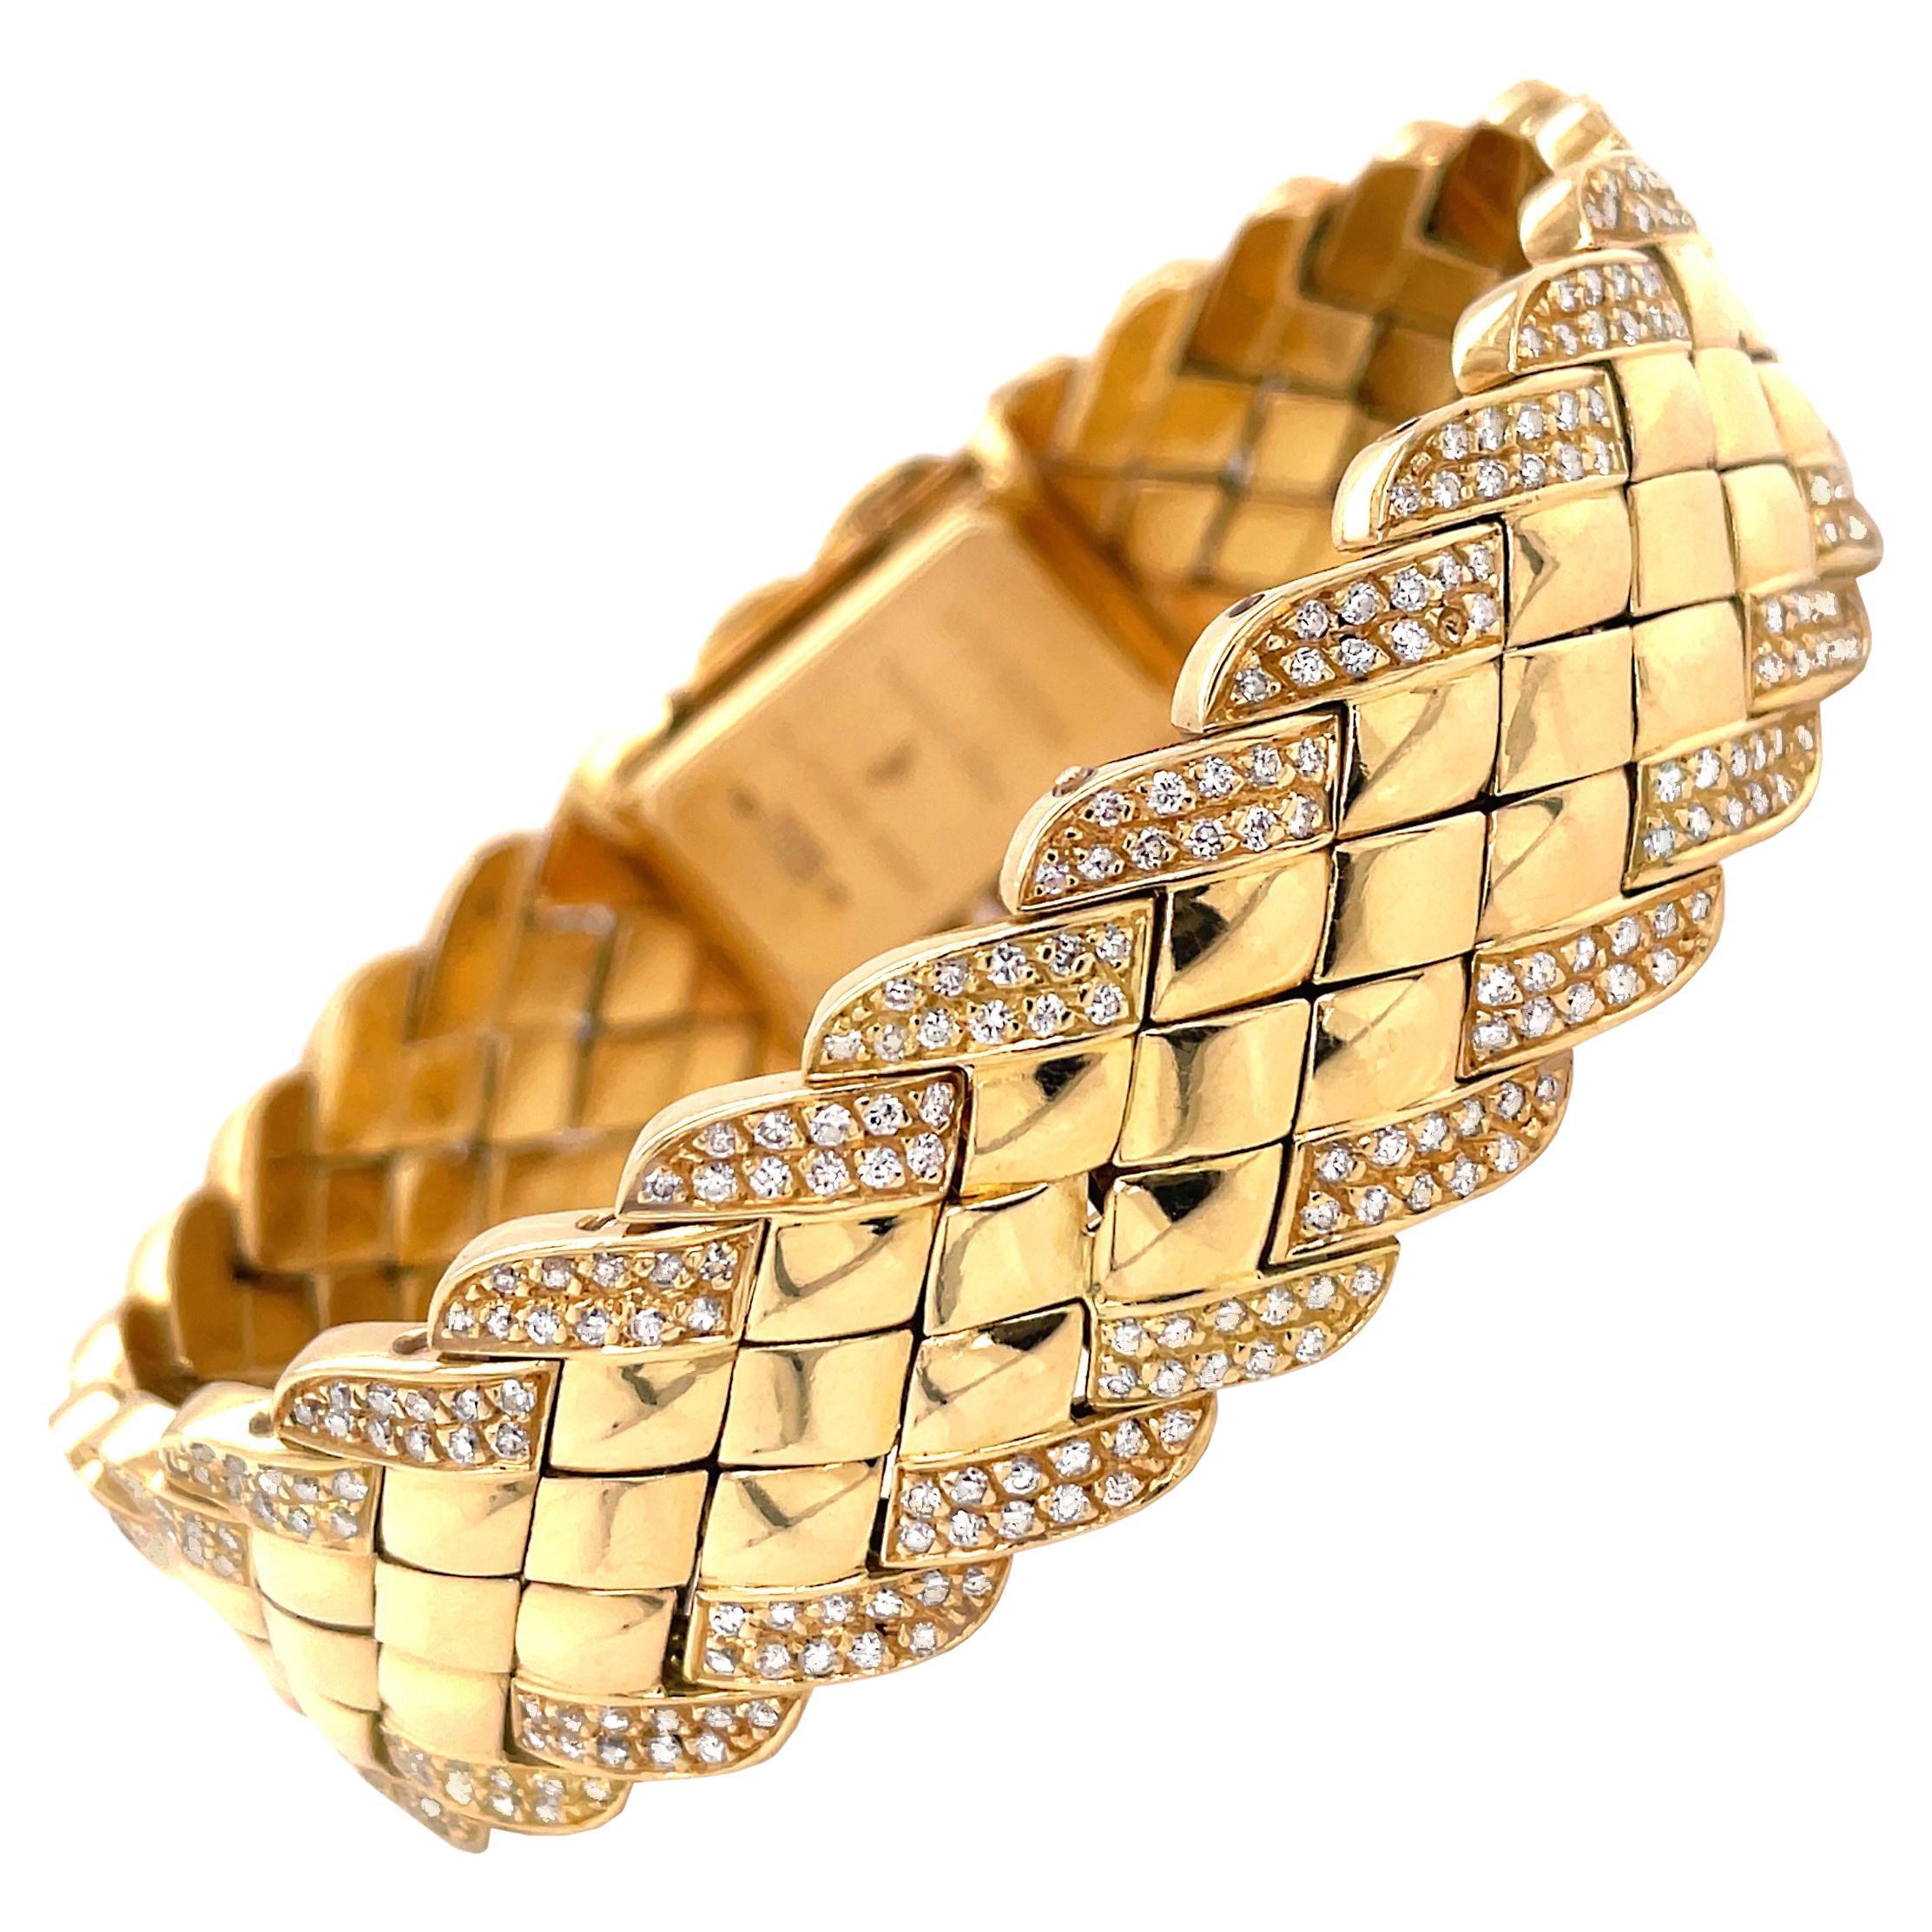 Cette magnifique montre-bracelet du créateur de bijoux français Alexis Barthelay est fabriquée en or jaune 18 carats. Le bracelet est magnifiquement réalisé avec des panneaux métalliques en forme de diamant, terminés par une bordure sertie de